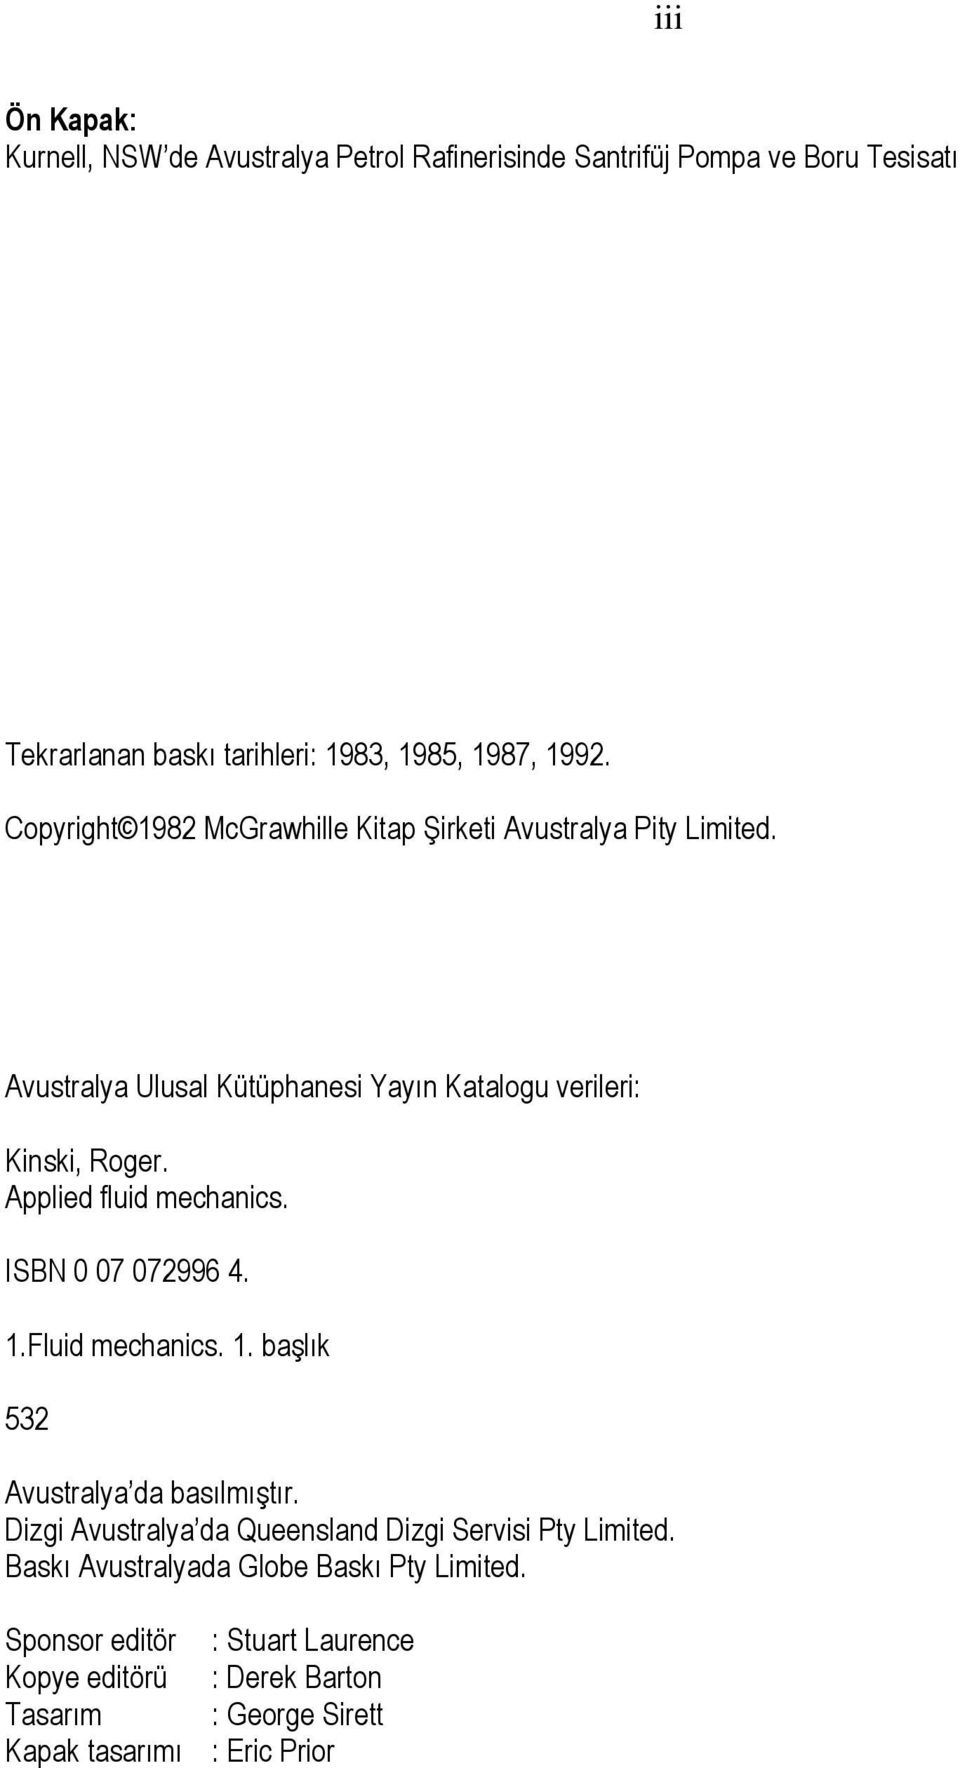 mechanics ISBN 0 07 07996 4 Fluid mechanics başlık 53 Avustralya da basılmıştır Dizgi Avustralya da Queensland Dizgi Servisi Pty Limited Baskı